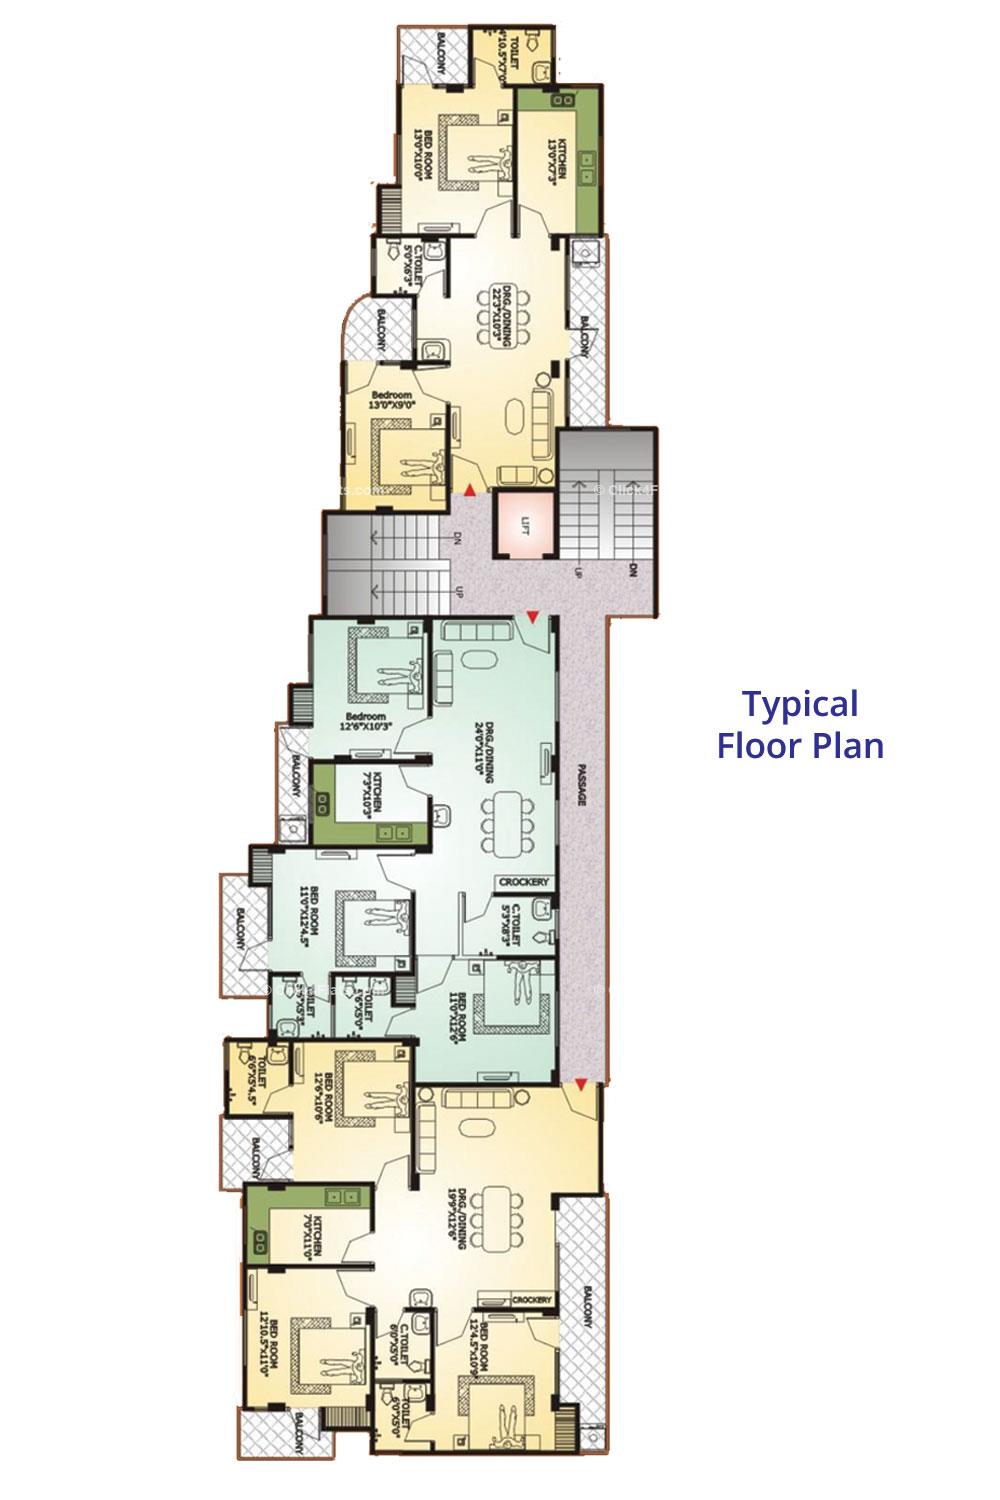 Midas Residency Typical Floor Plan